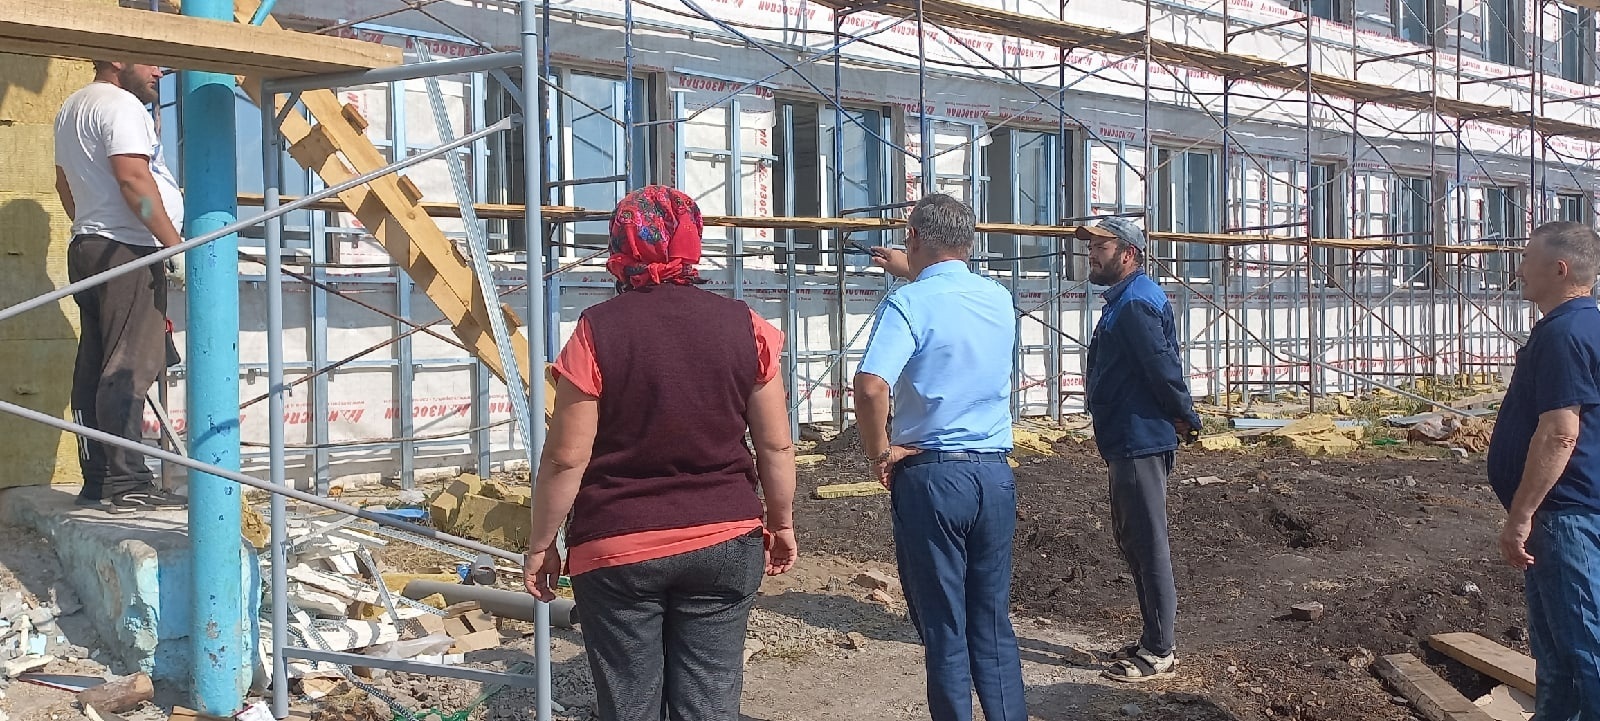 В селе Терменево Салаватского района готовится к открытию новая школа